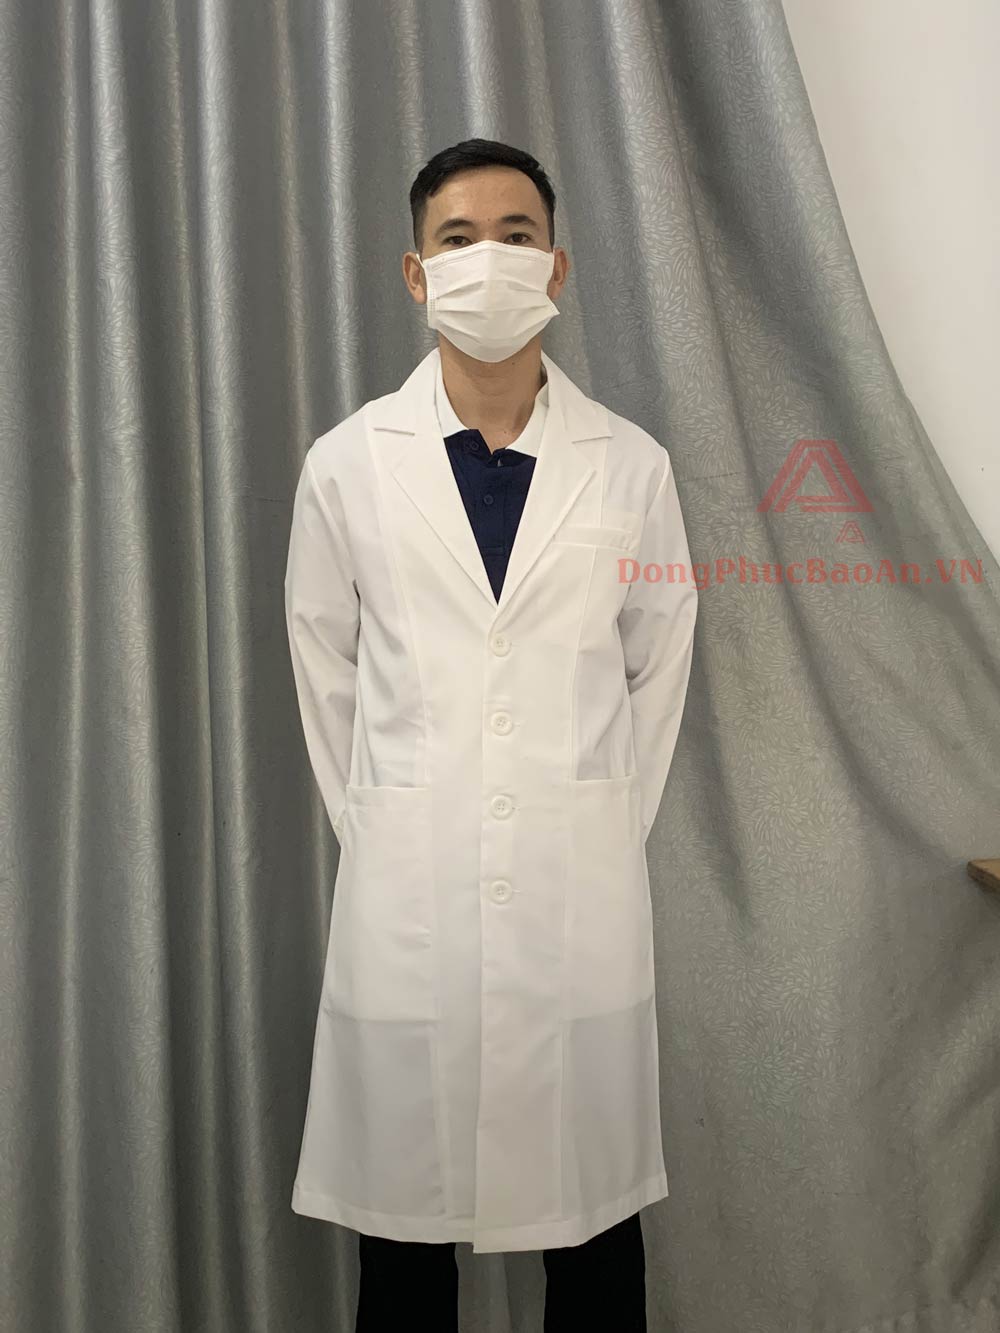 [ GIÁ XƯỞNG] Đặt may áo blouse trắng bác sĩ tay dài theo yêu cầu giá rẻ TPHCM - ĐN- HN